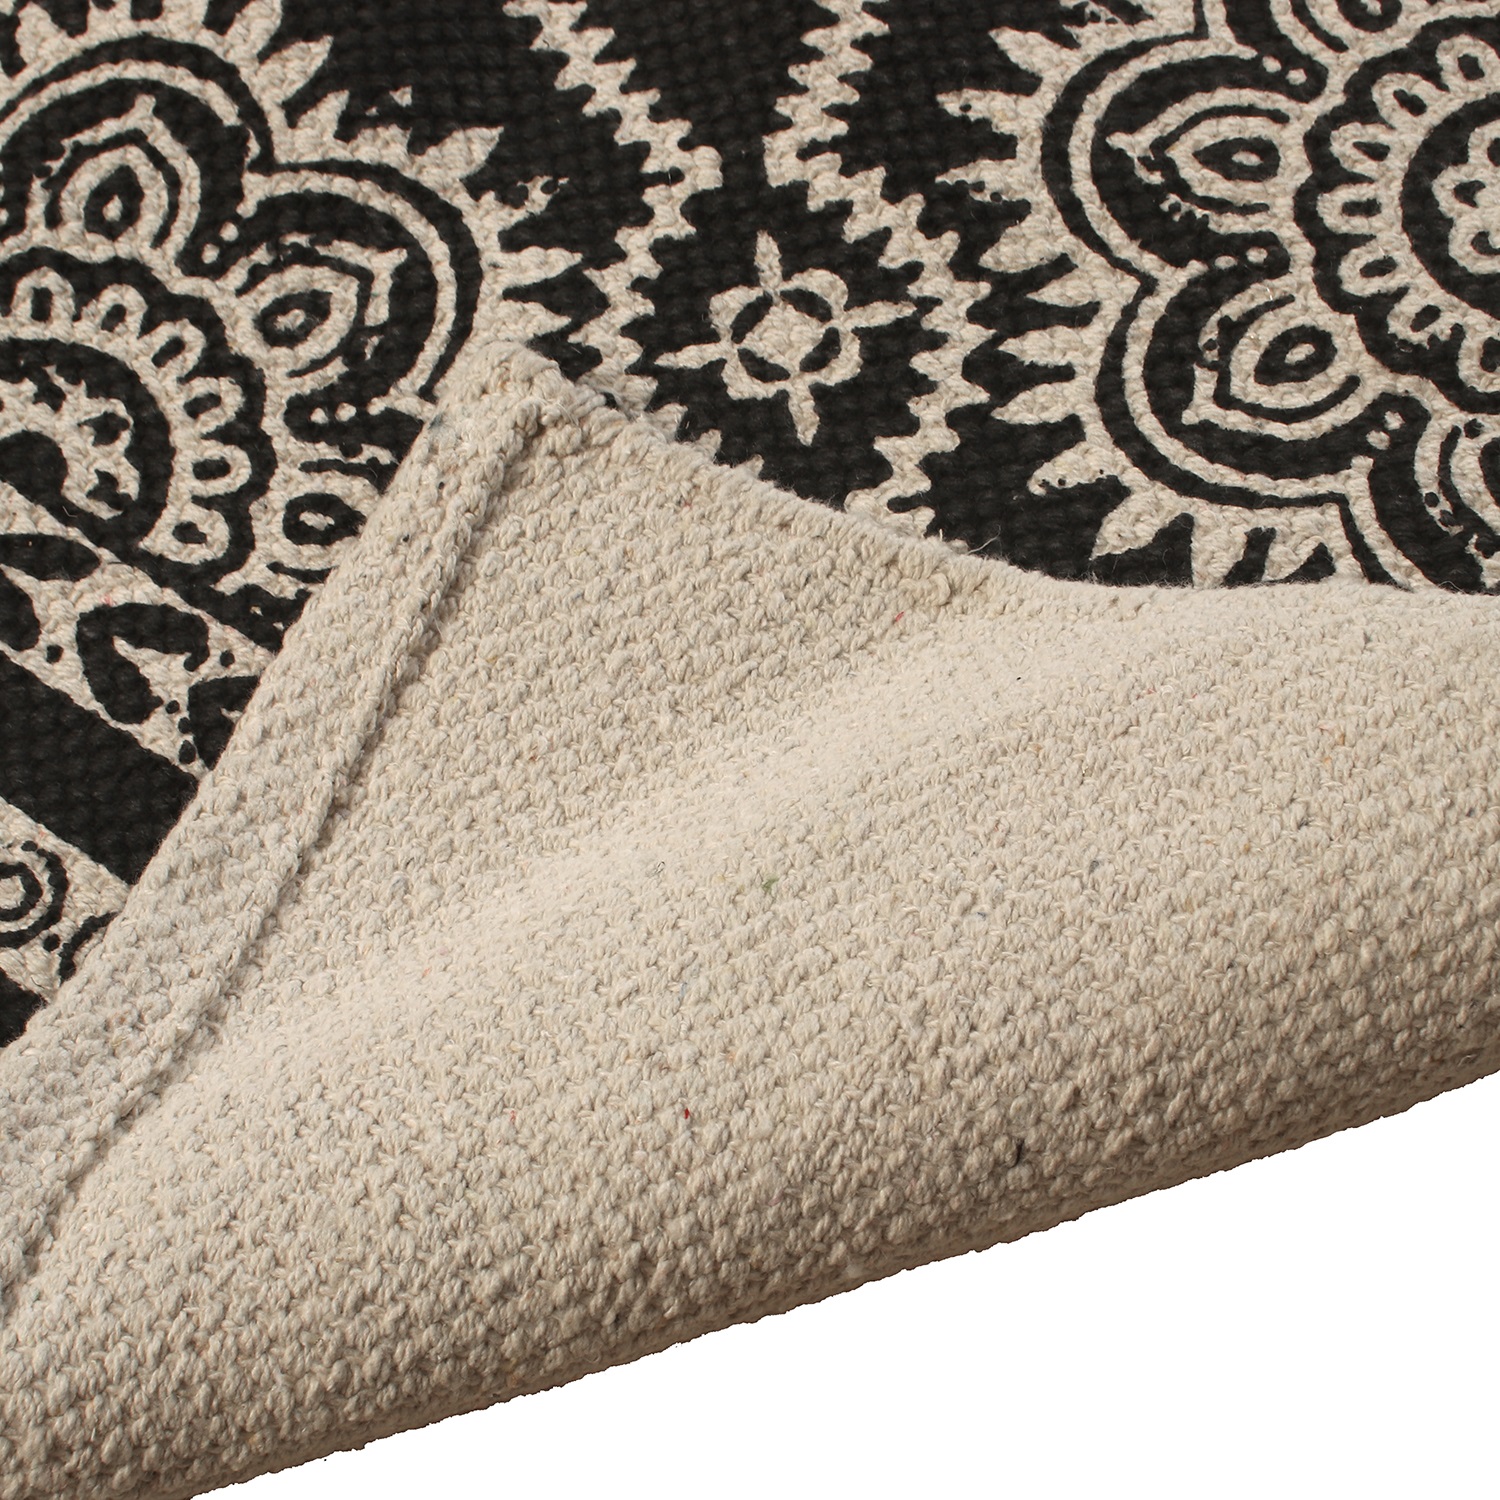 31849-alfombra-algodon-impresa-140x200cm-1.jpg